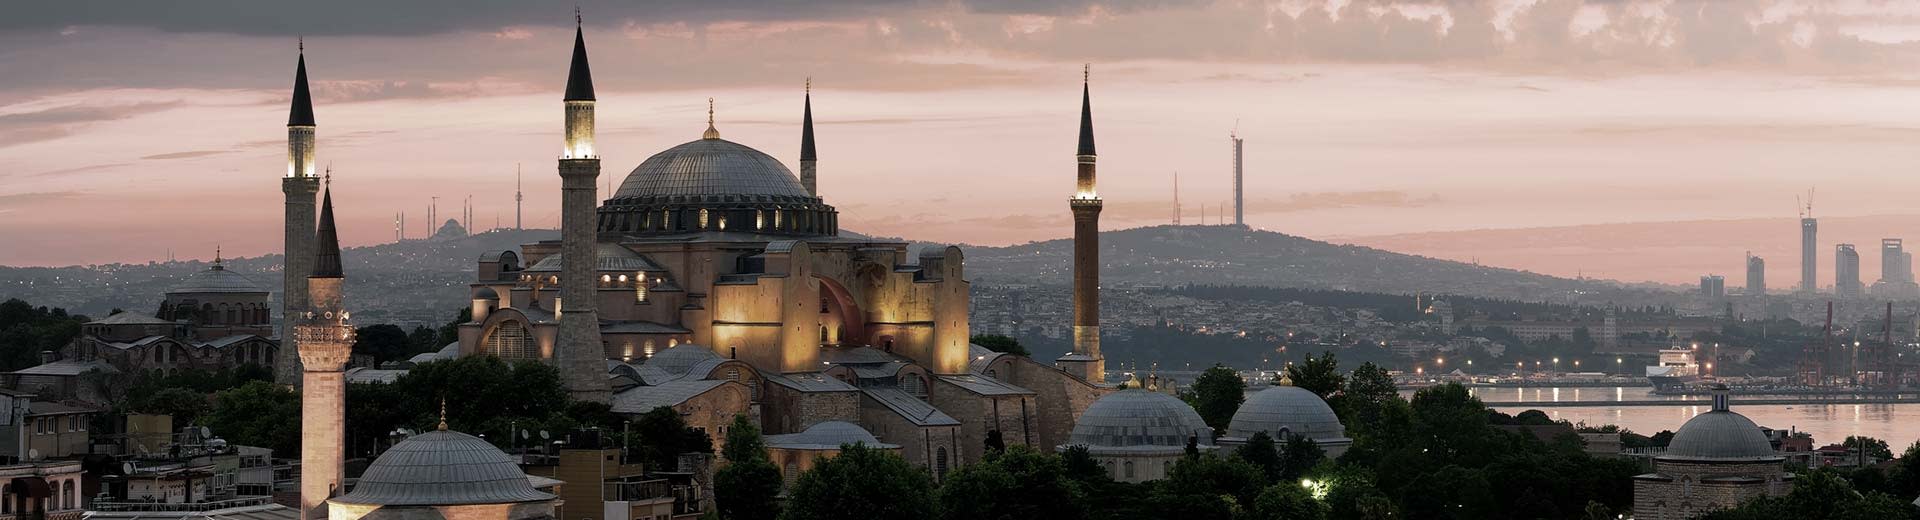 Una mezquita siluada contra el sol poniente en Estambul.